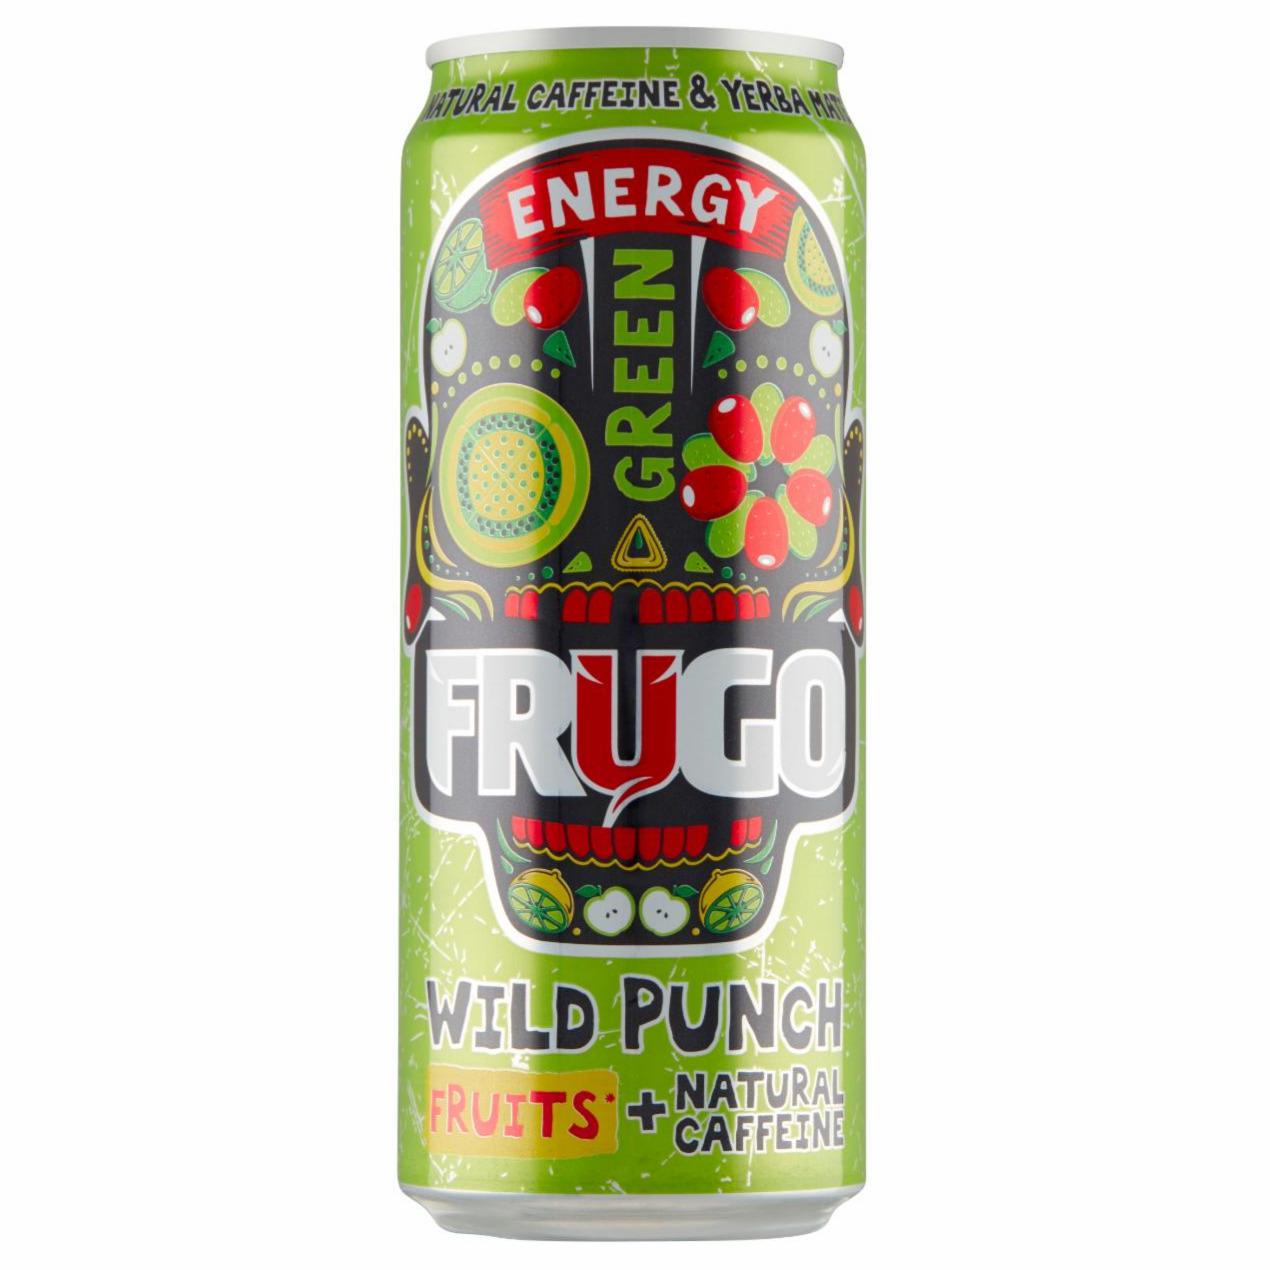 Zdjęcia - Frugo Energy Cactus & Citrus Gazowany napój energetyzujący 330 ml